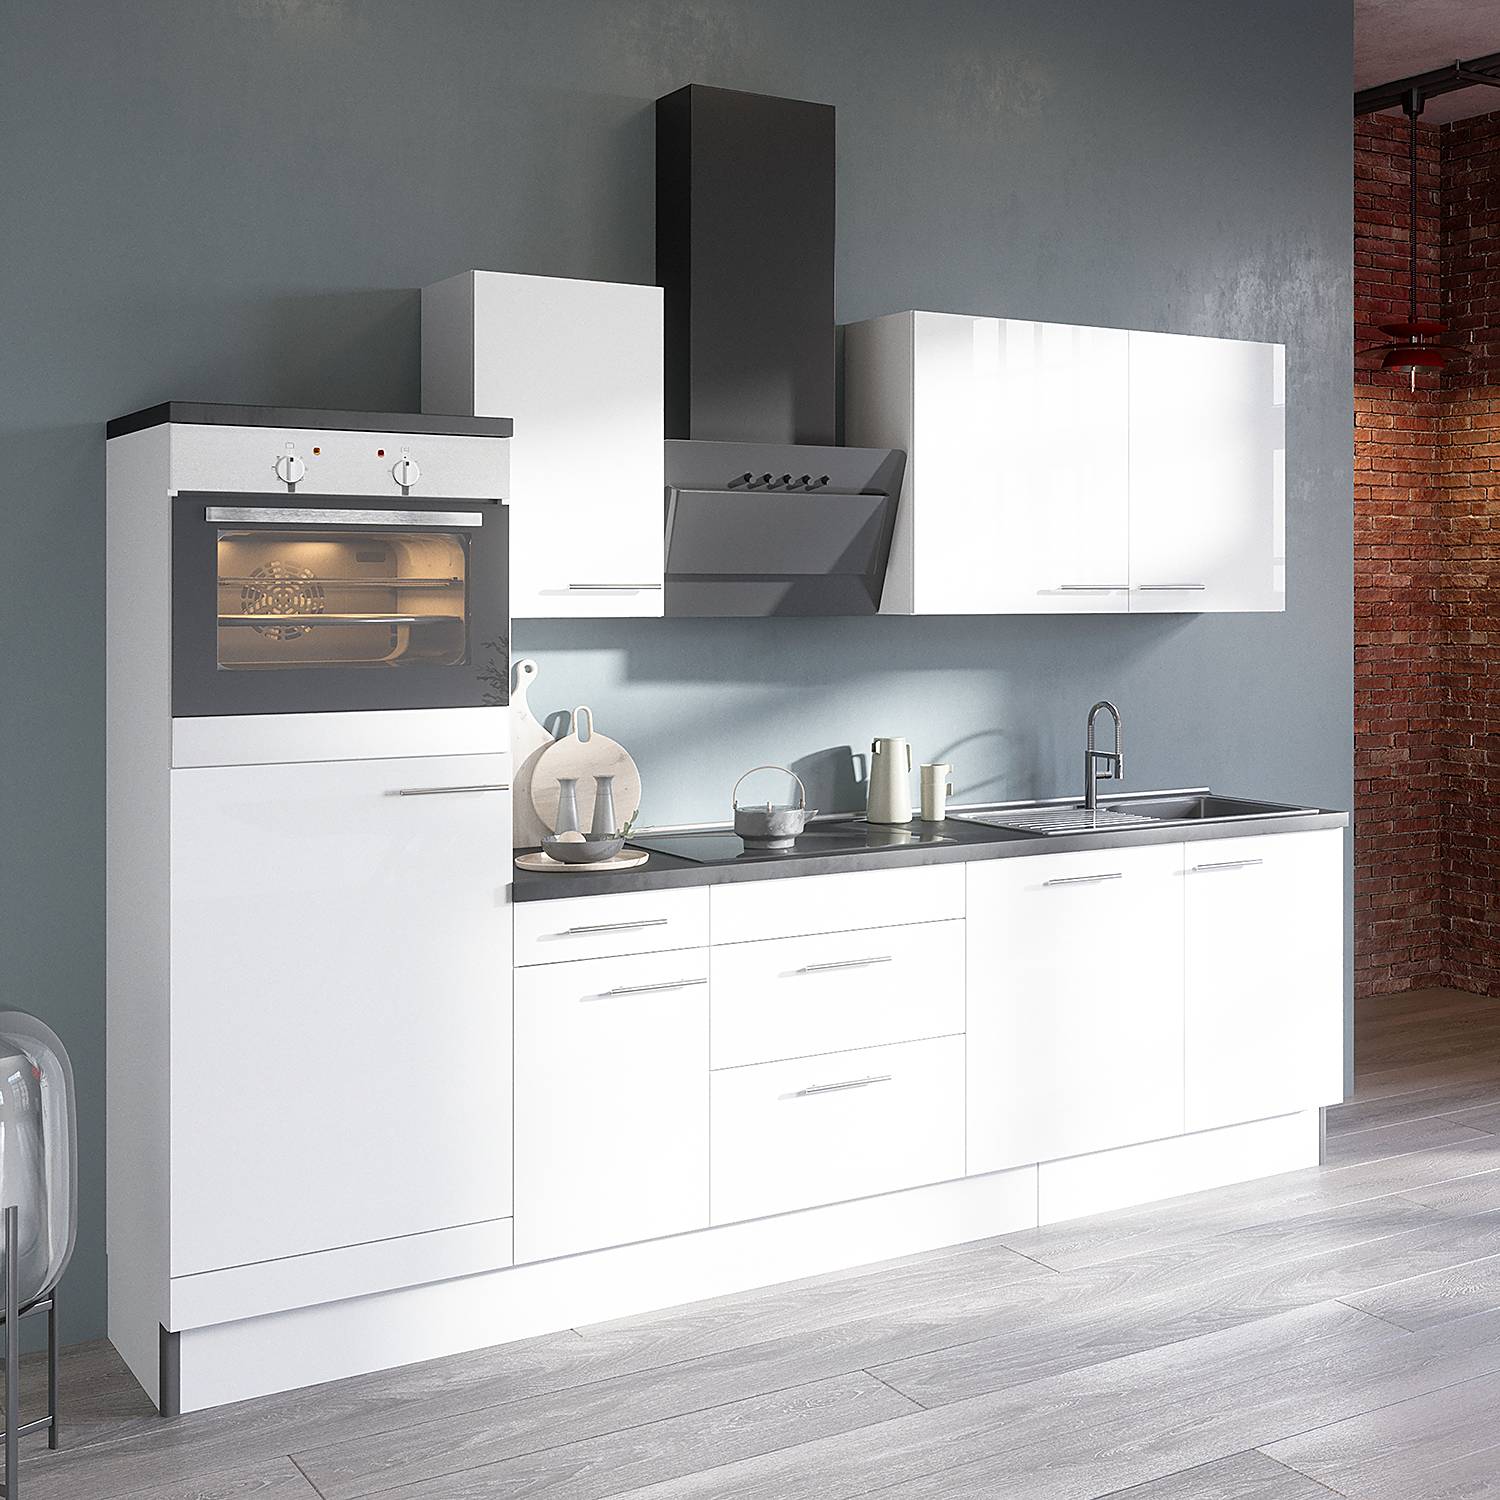 Küchenzeile OPTIkomfort Variante D kaufen | home24